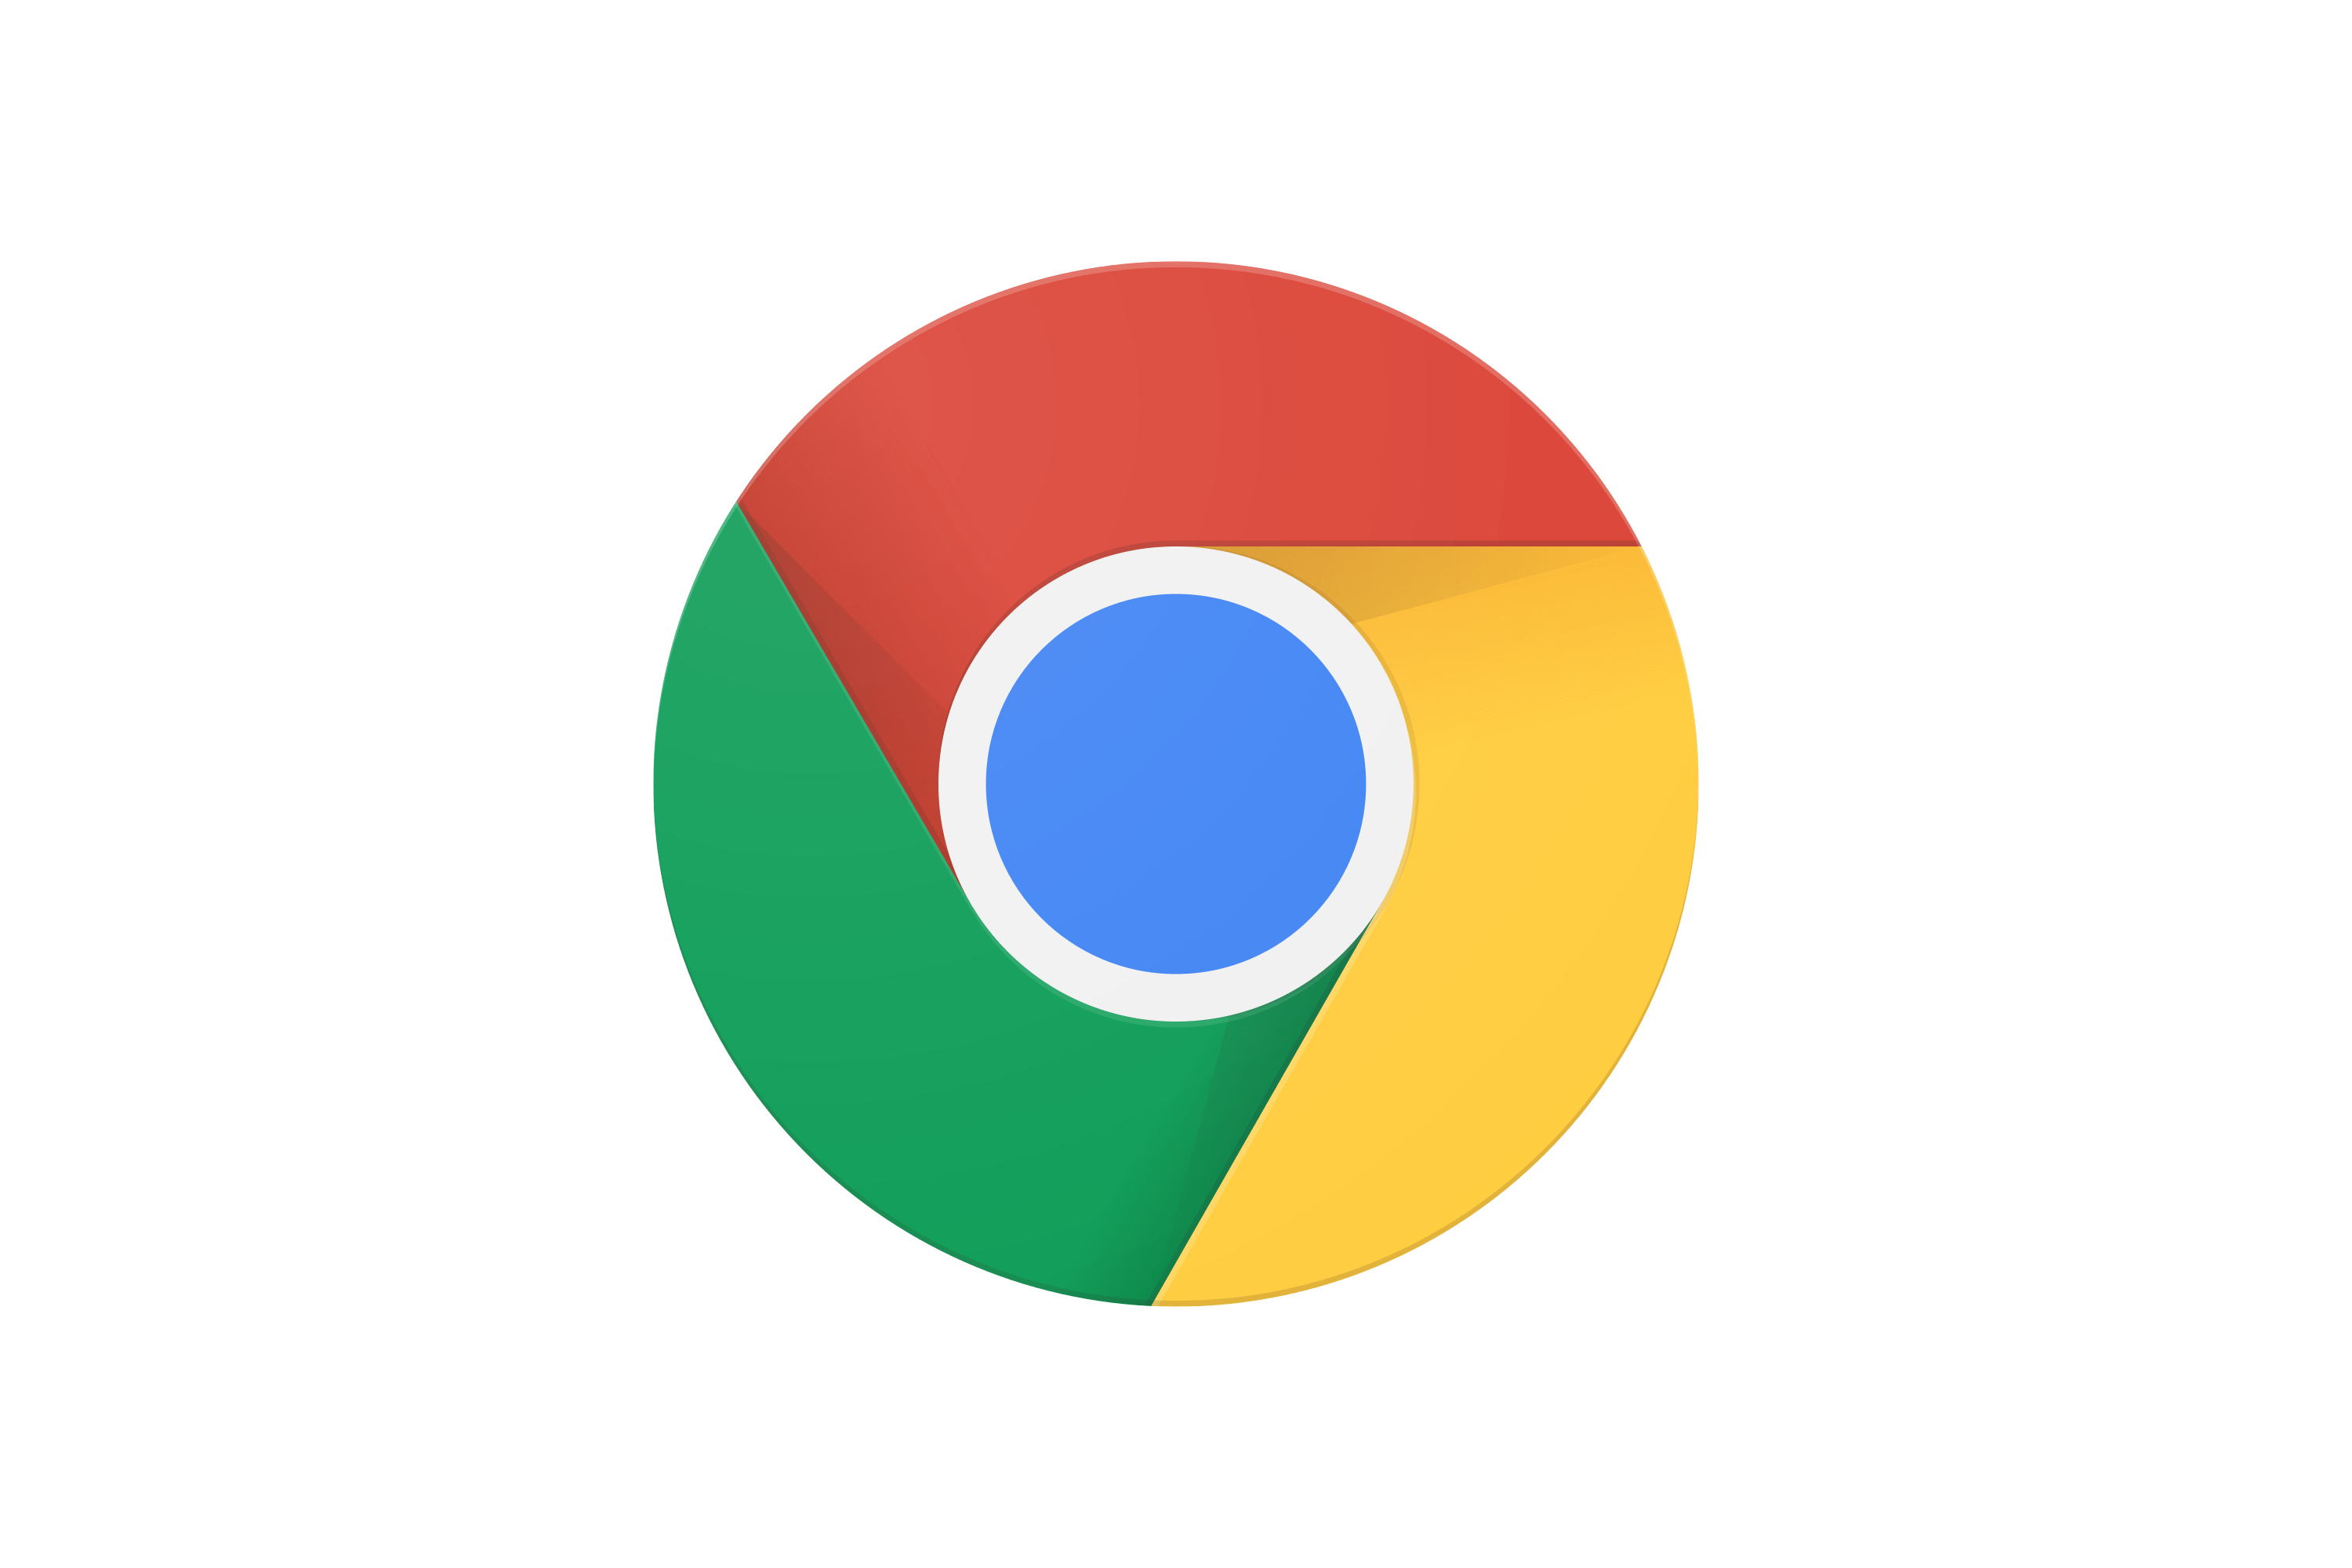 Chrome Logo PNG HD Quality